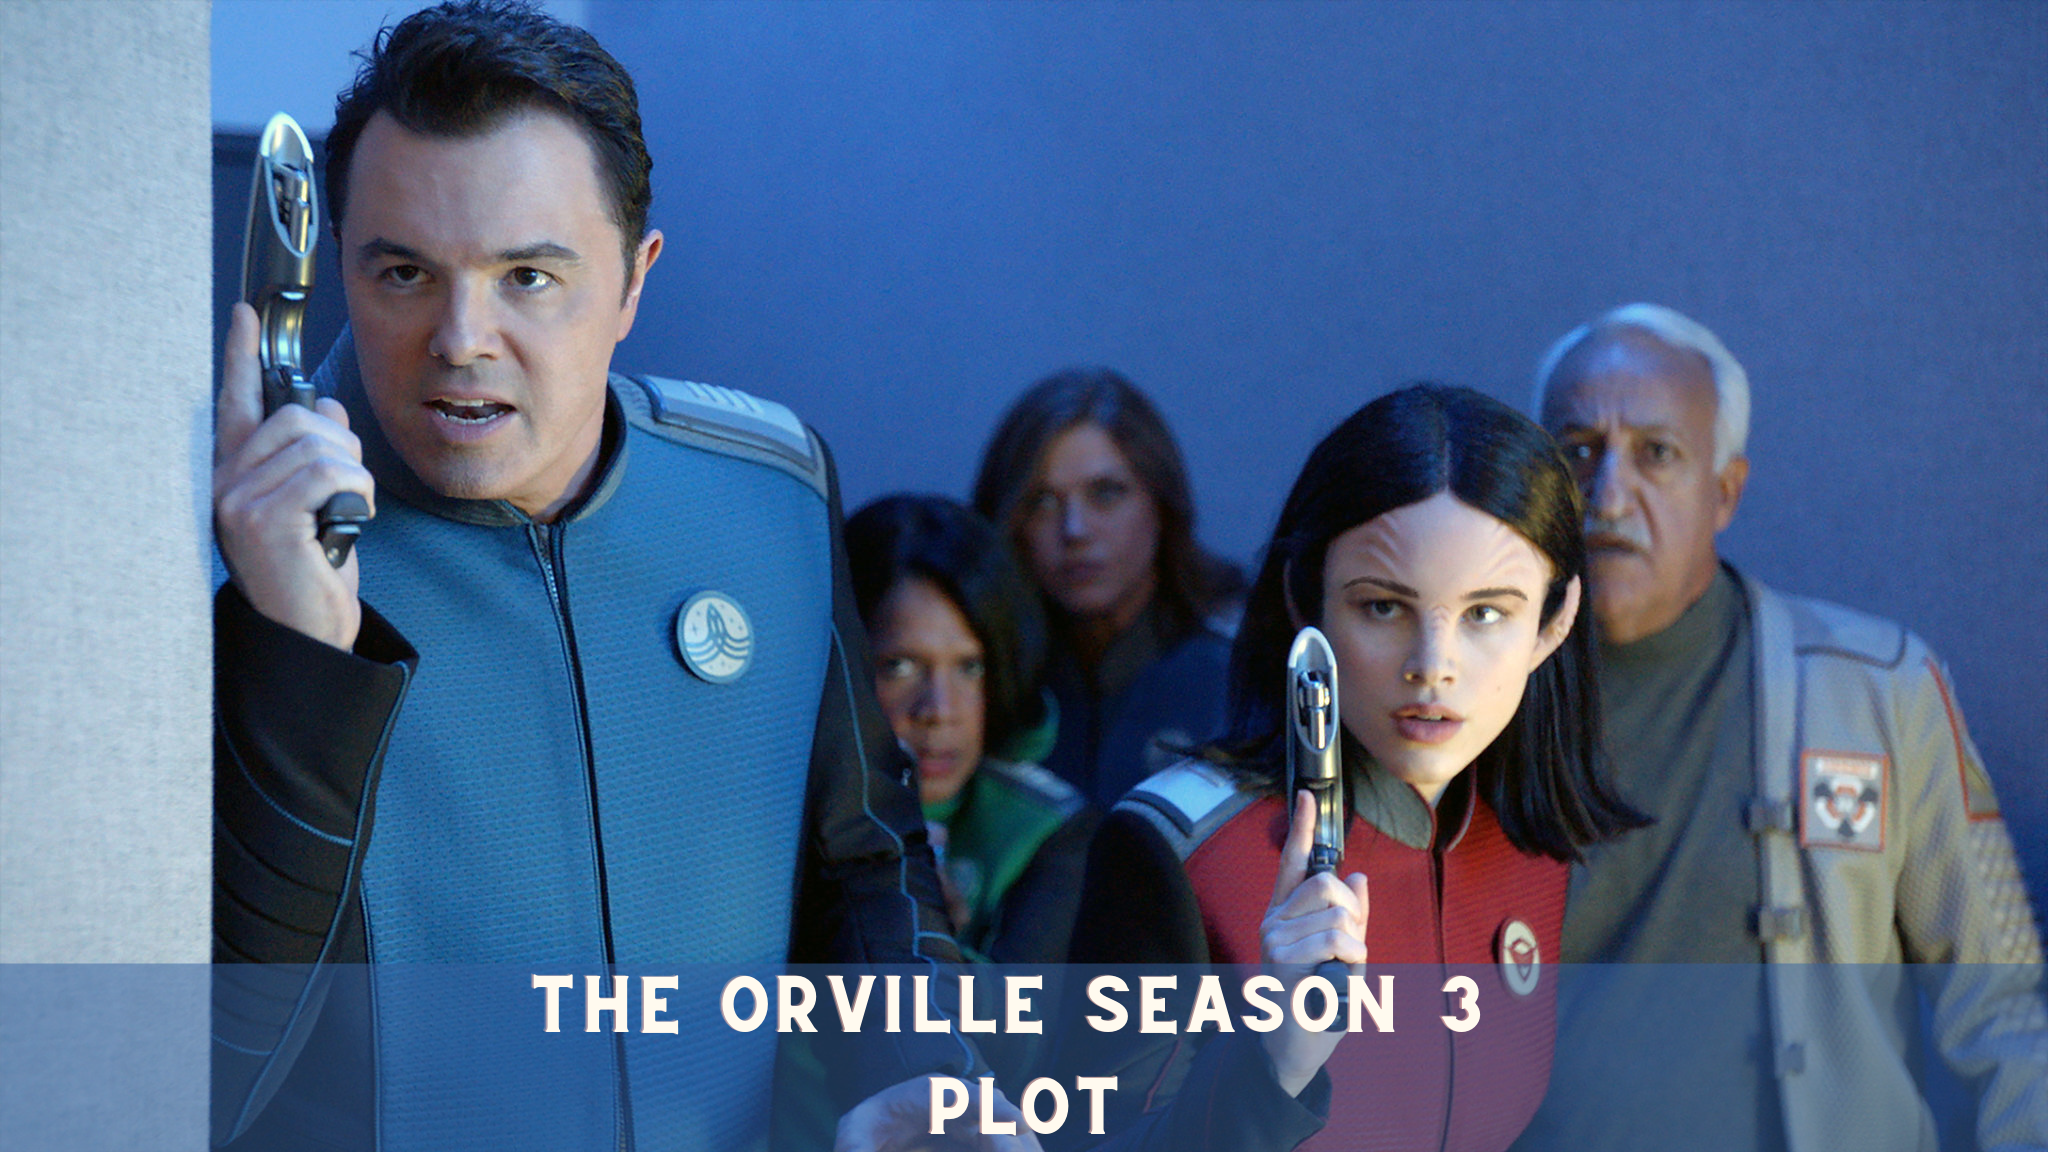 The Orville Season 3 Plot